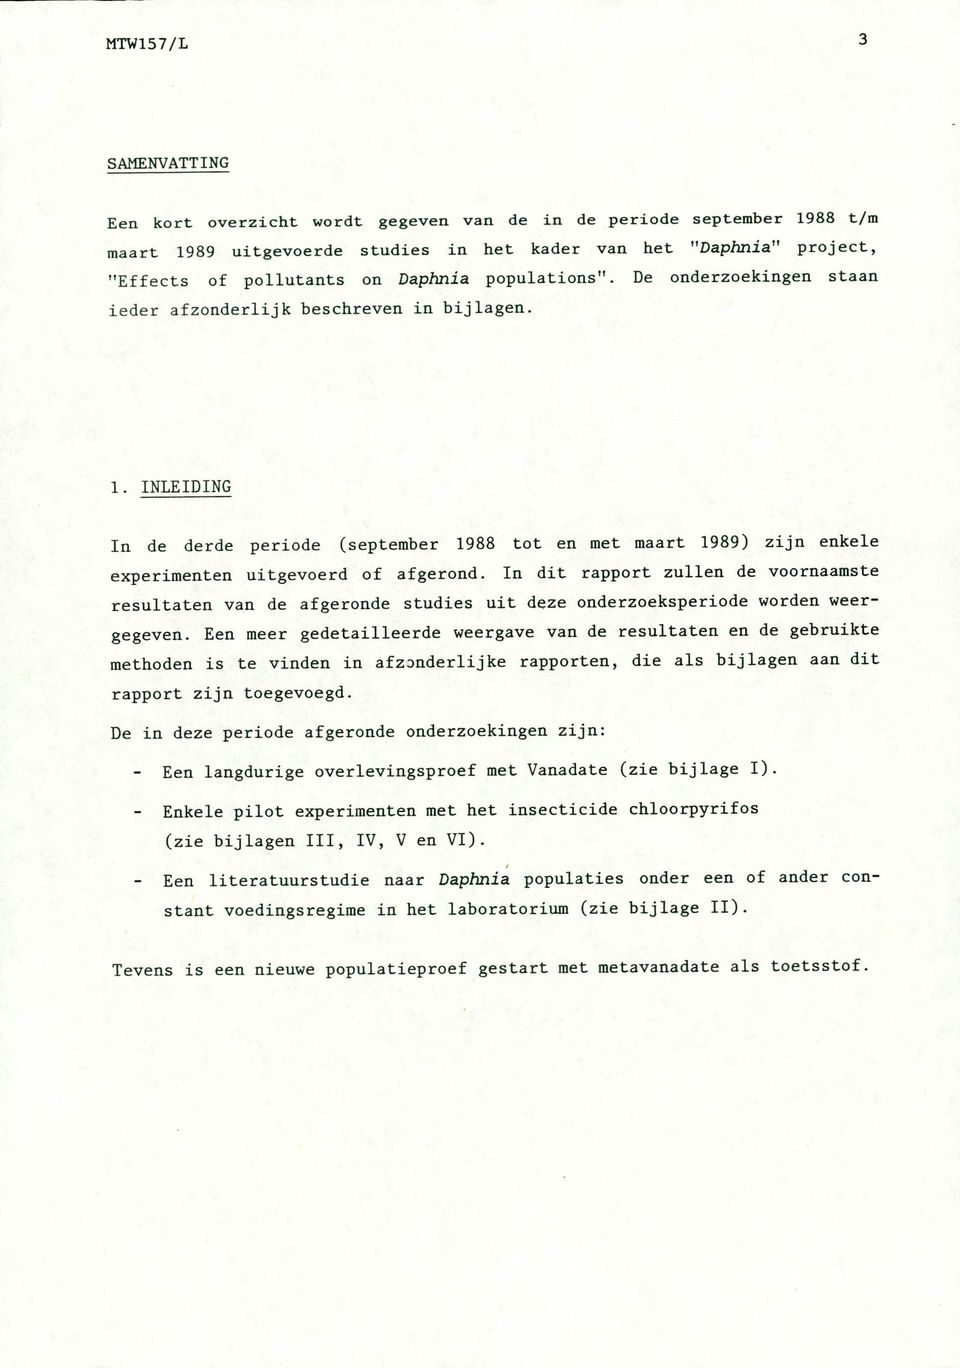 INLEIDING In de derde periode (september 1988 tot en met maart 1989) zijn enkele experimenten uitgevoerd of afgerond.